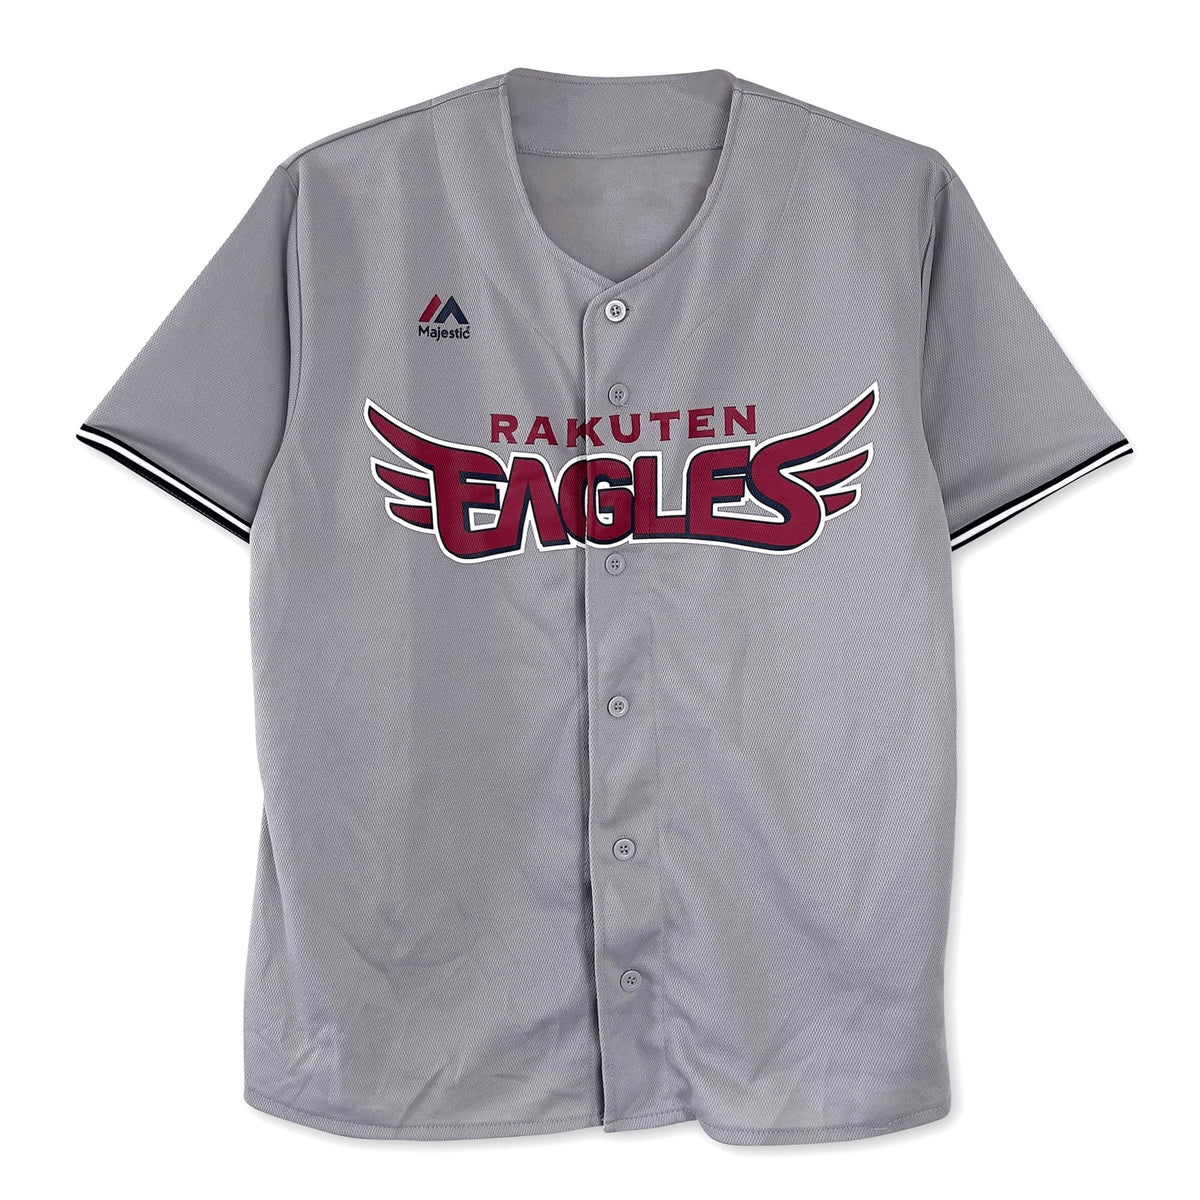 Japan NPB Baseball Majestic Tohoku Rakuten Eagles 2021 Jersey Grey - Sugoi JDM